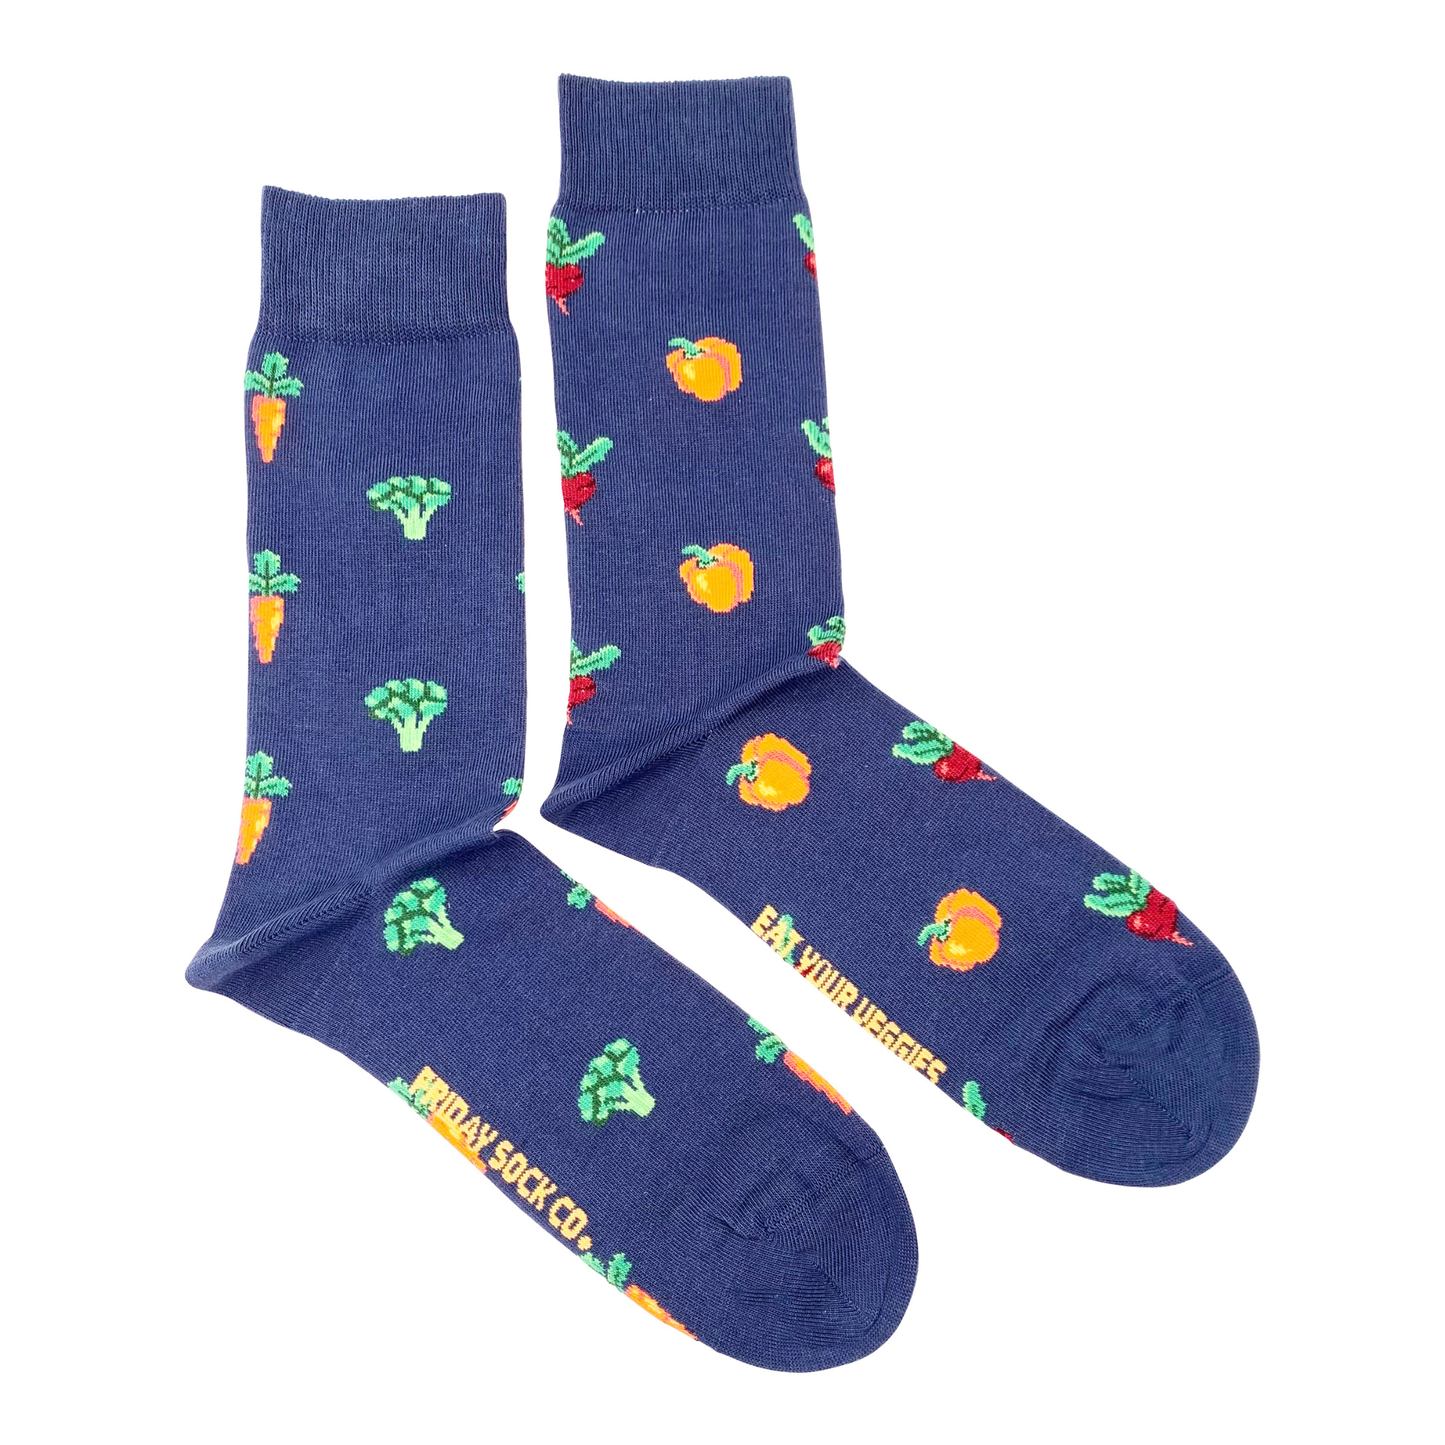 Vegetables Men's Mismatched Socks | Ethically Made